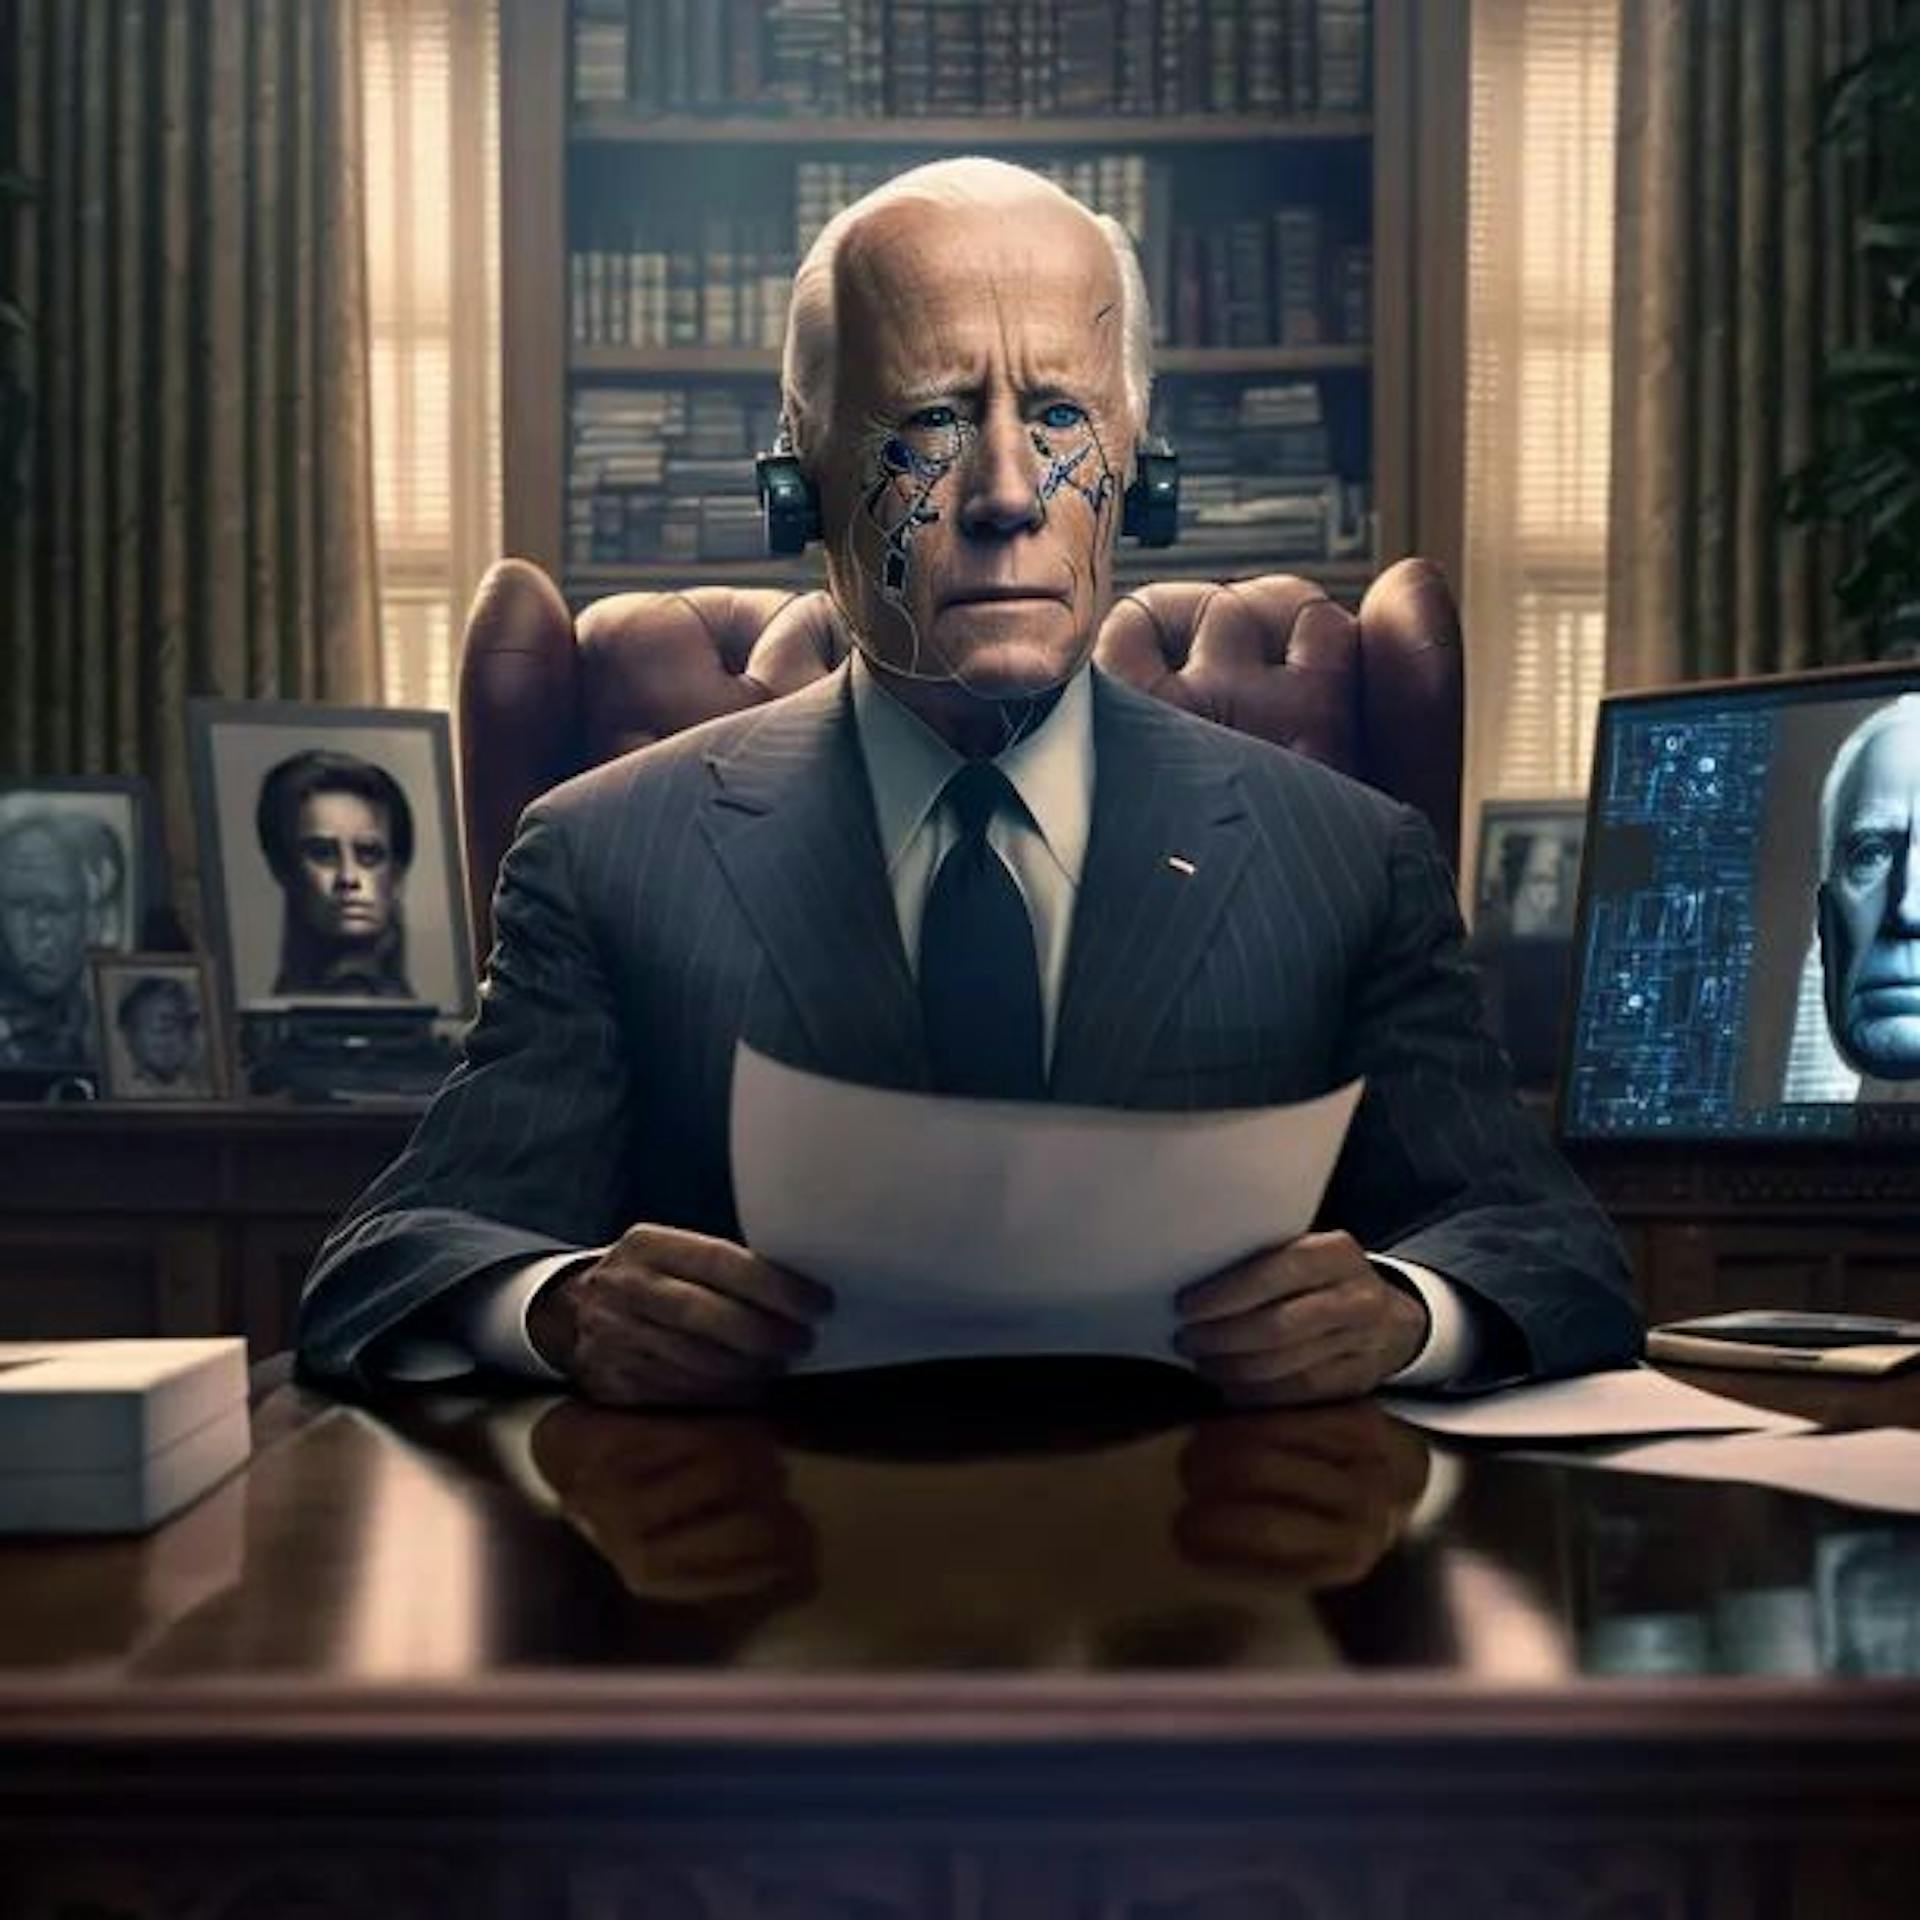 Eingabeaufforderung mitten auf der Reise: fotorealistisches Bild von Joe Biden im Oval Office, der von einem allwissenden KI-Programm politischen Rat einholt.